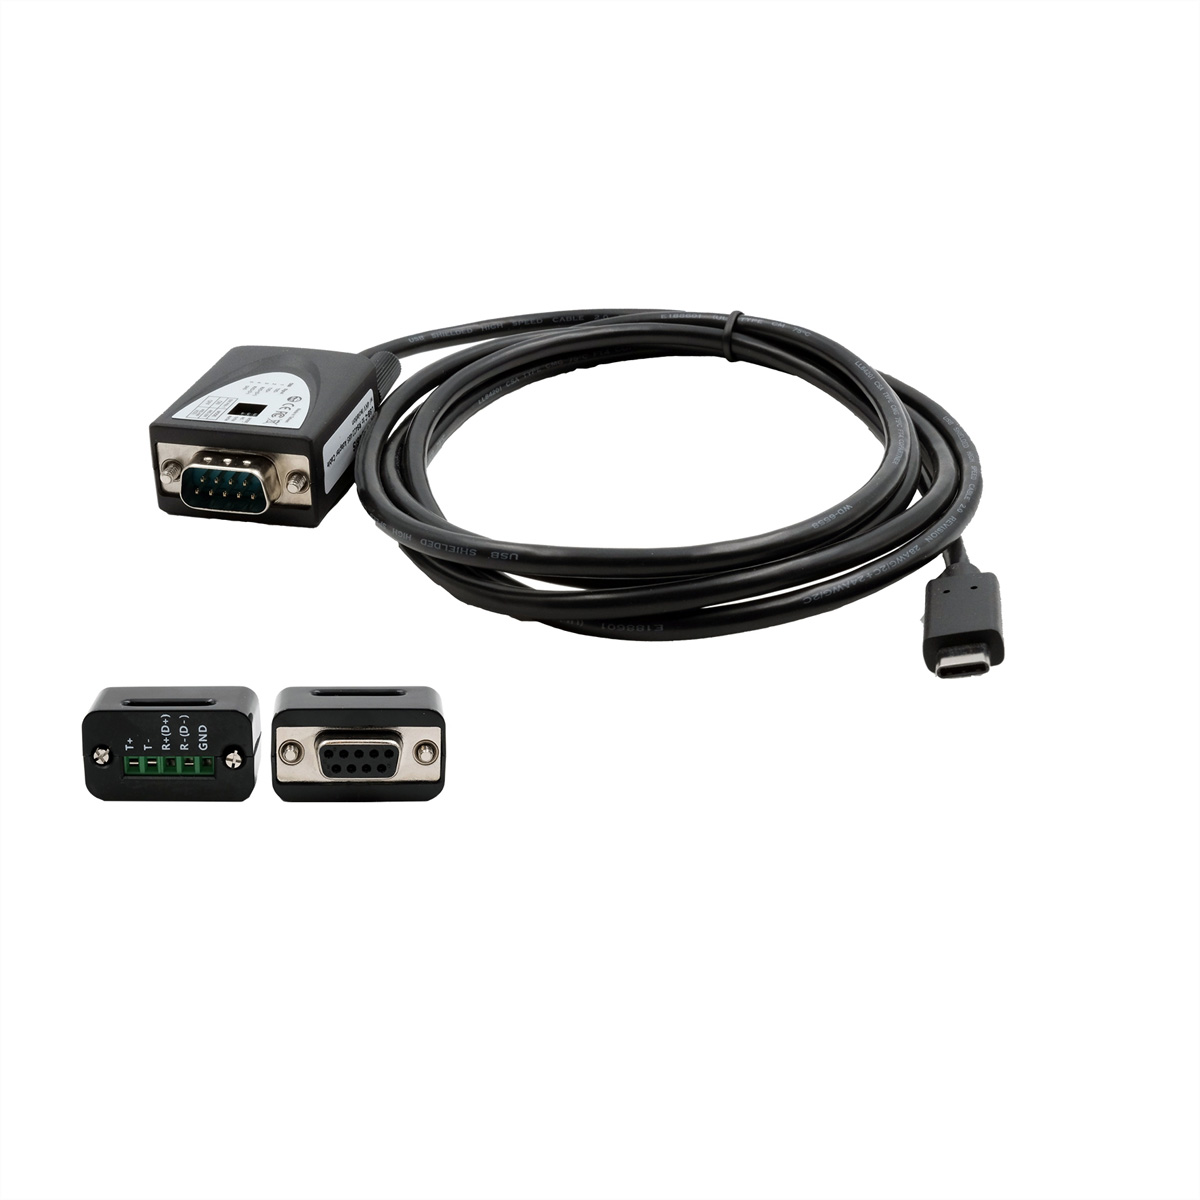 EXSYS EX-2346IS USB 2.0 zu 1S Serielle Schnittstelle RS-422/485 Port Konverter,